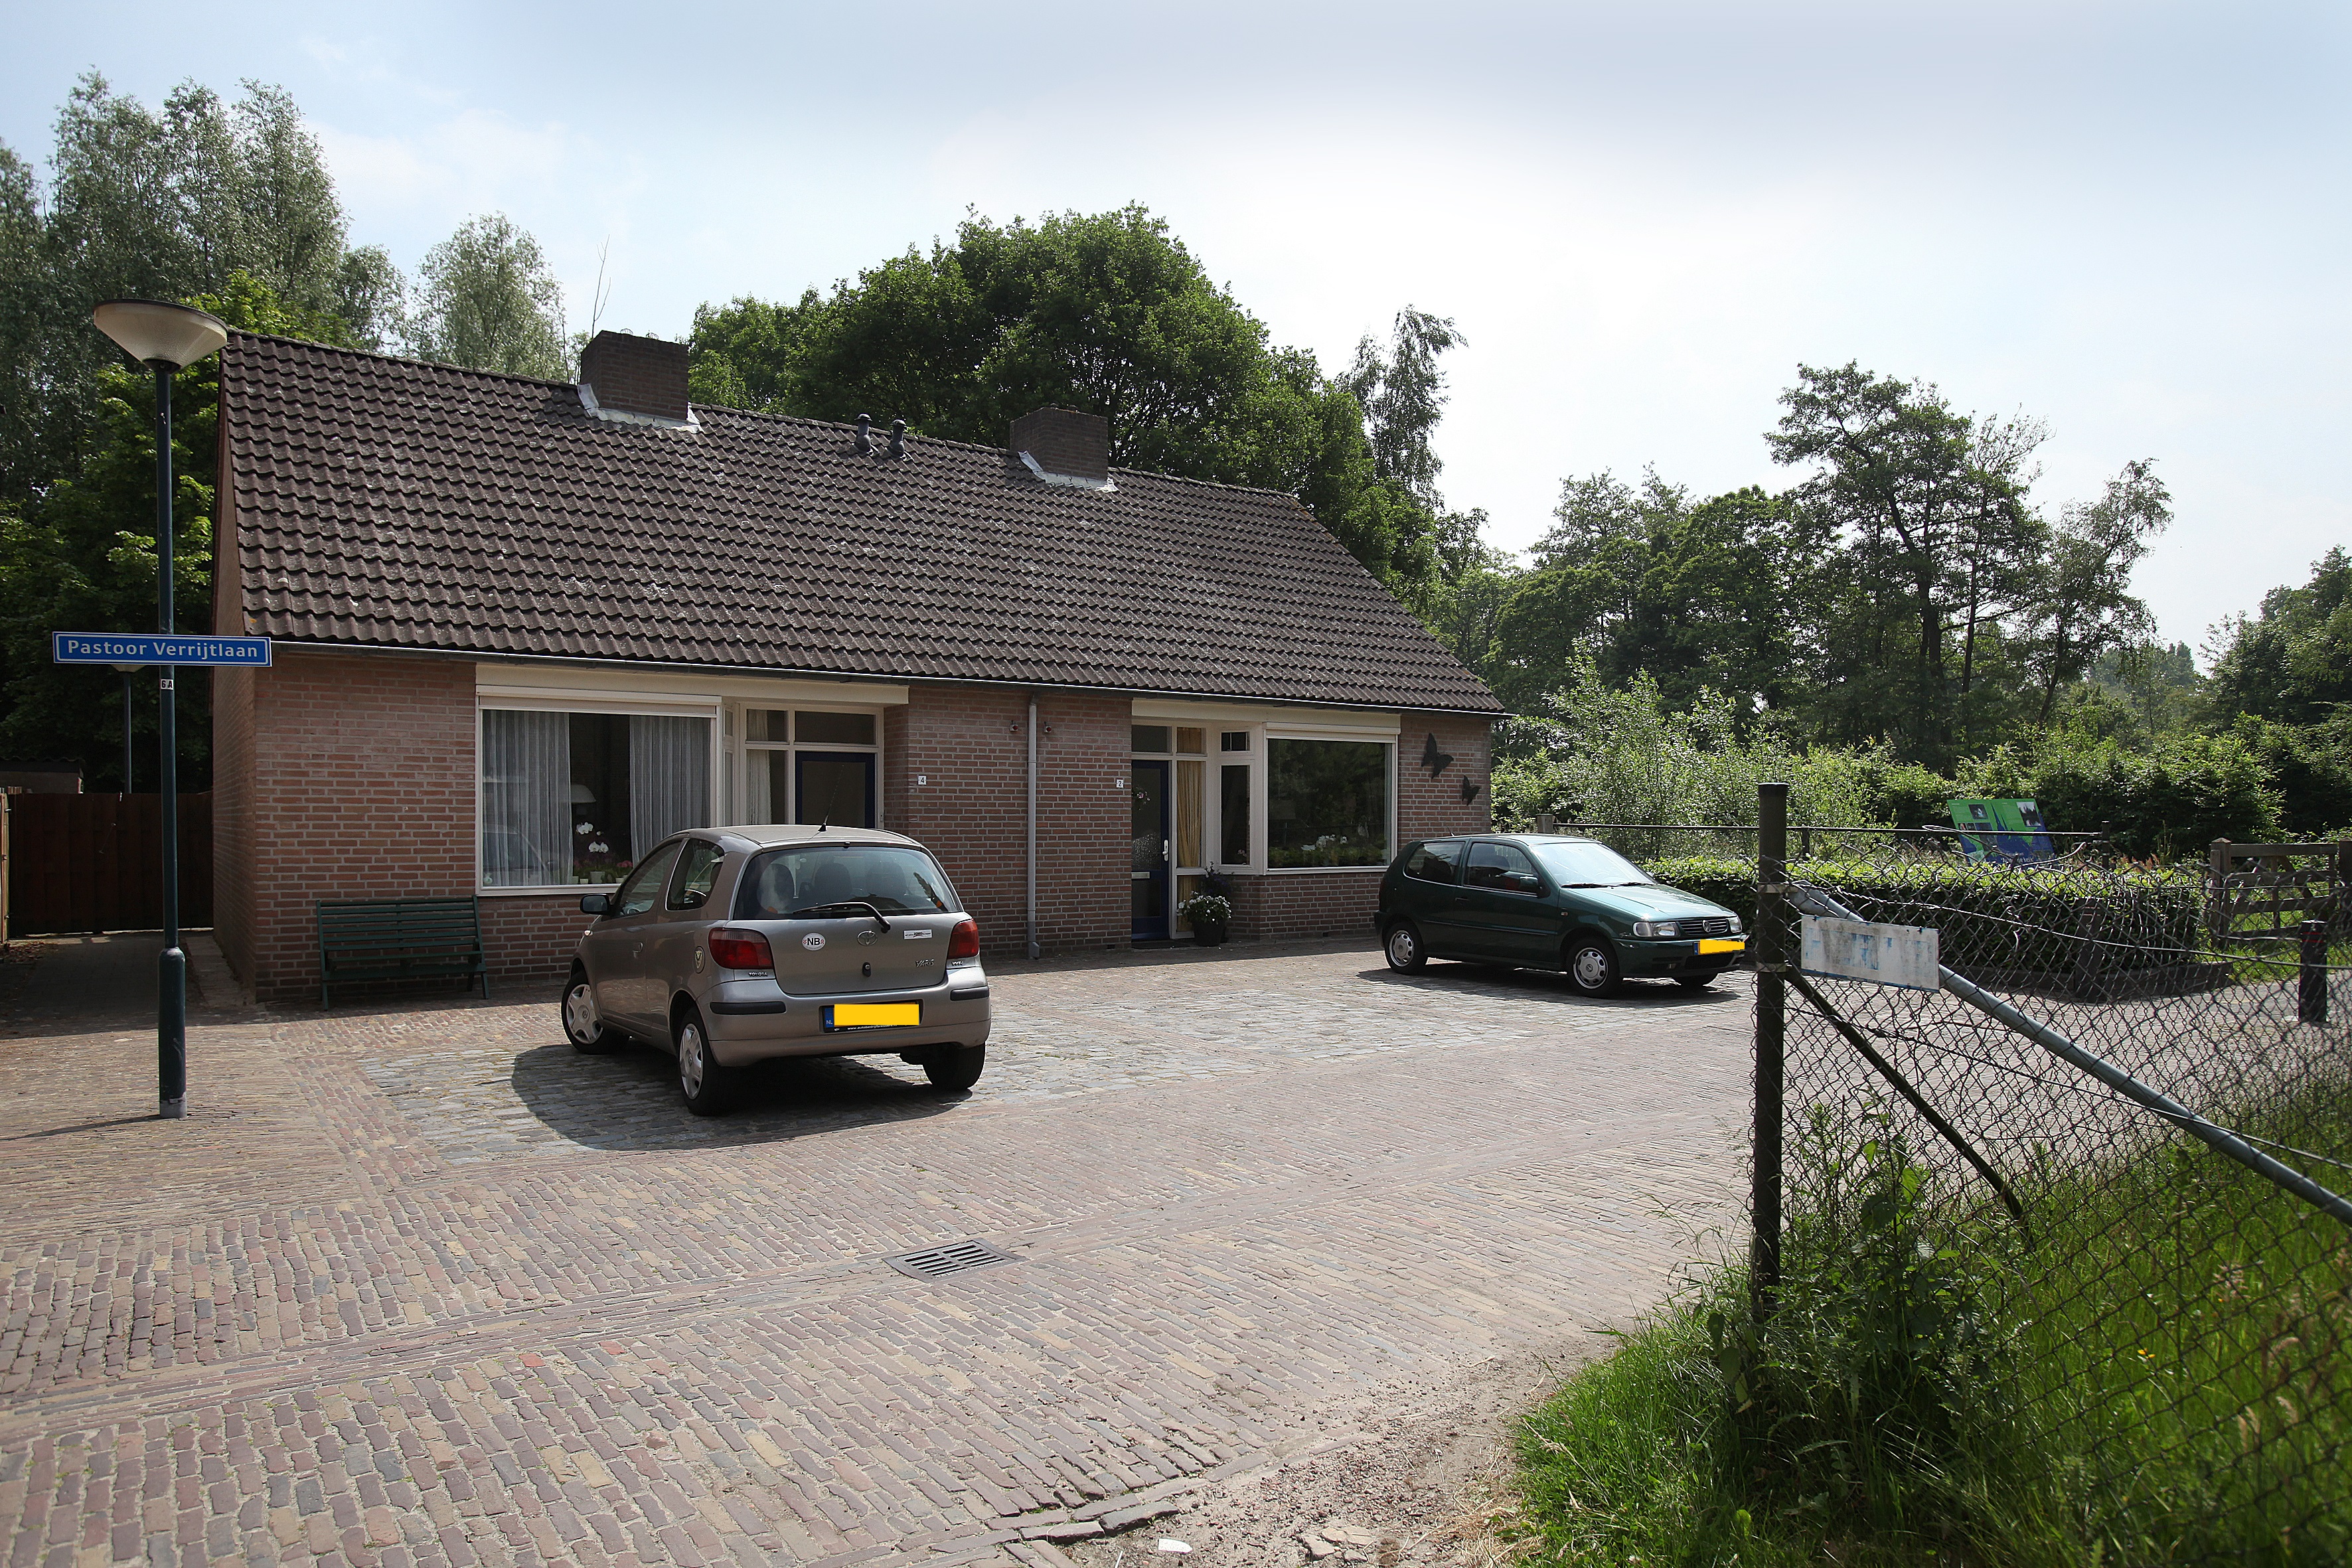 Pastoor Verrijtlaan 4, 5076 BD Haaren, Nederland